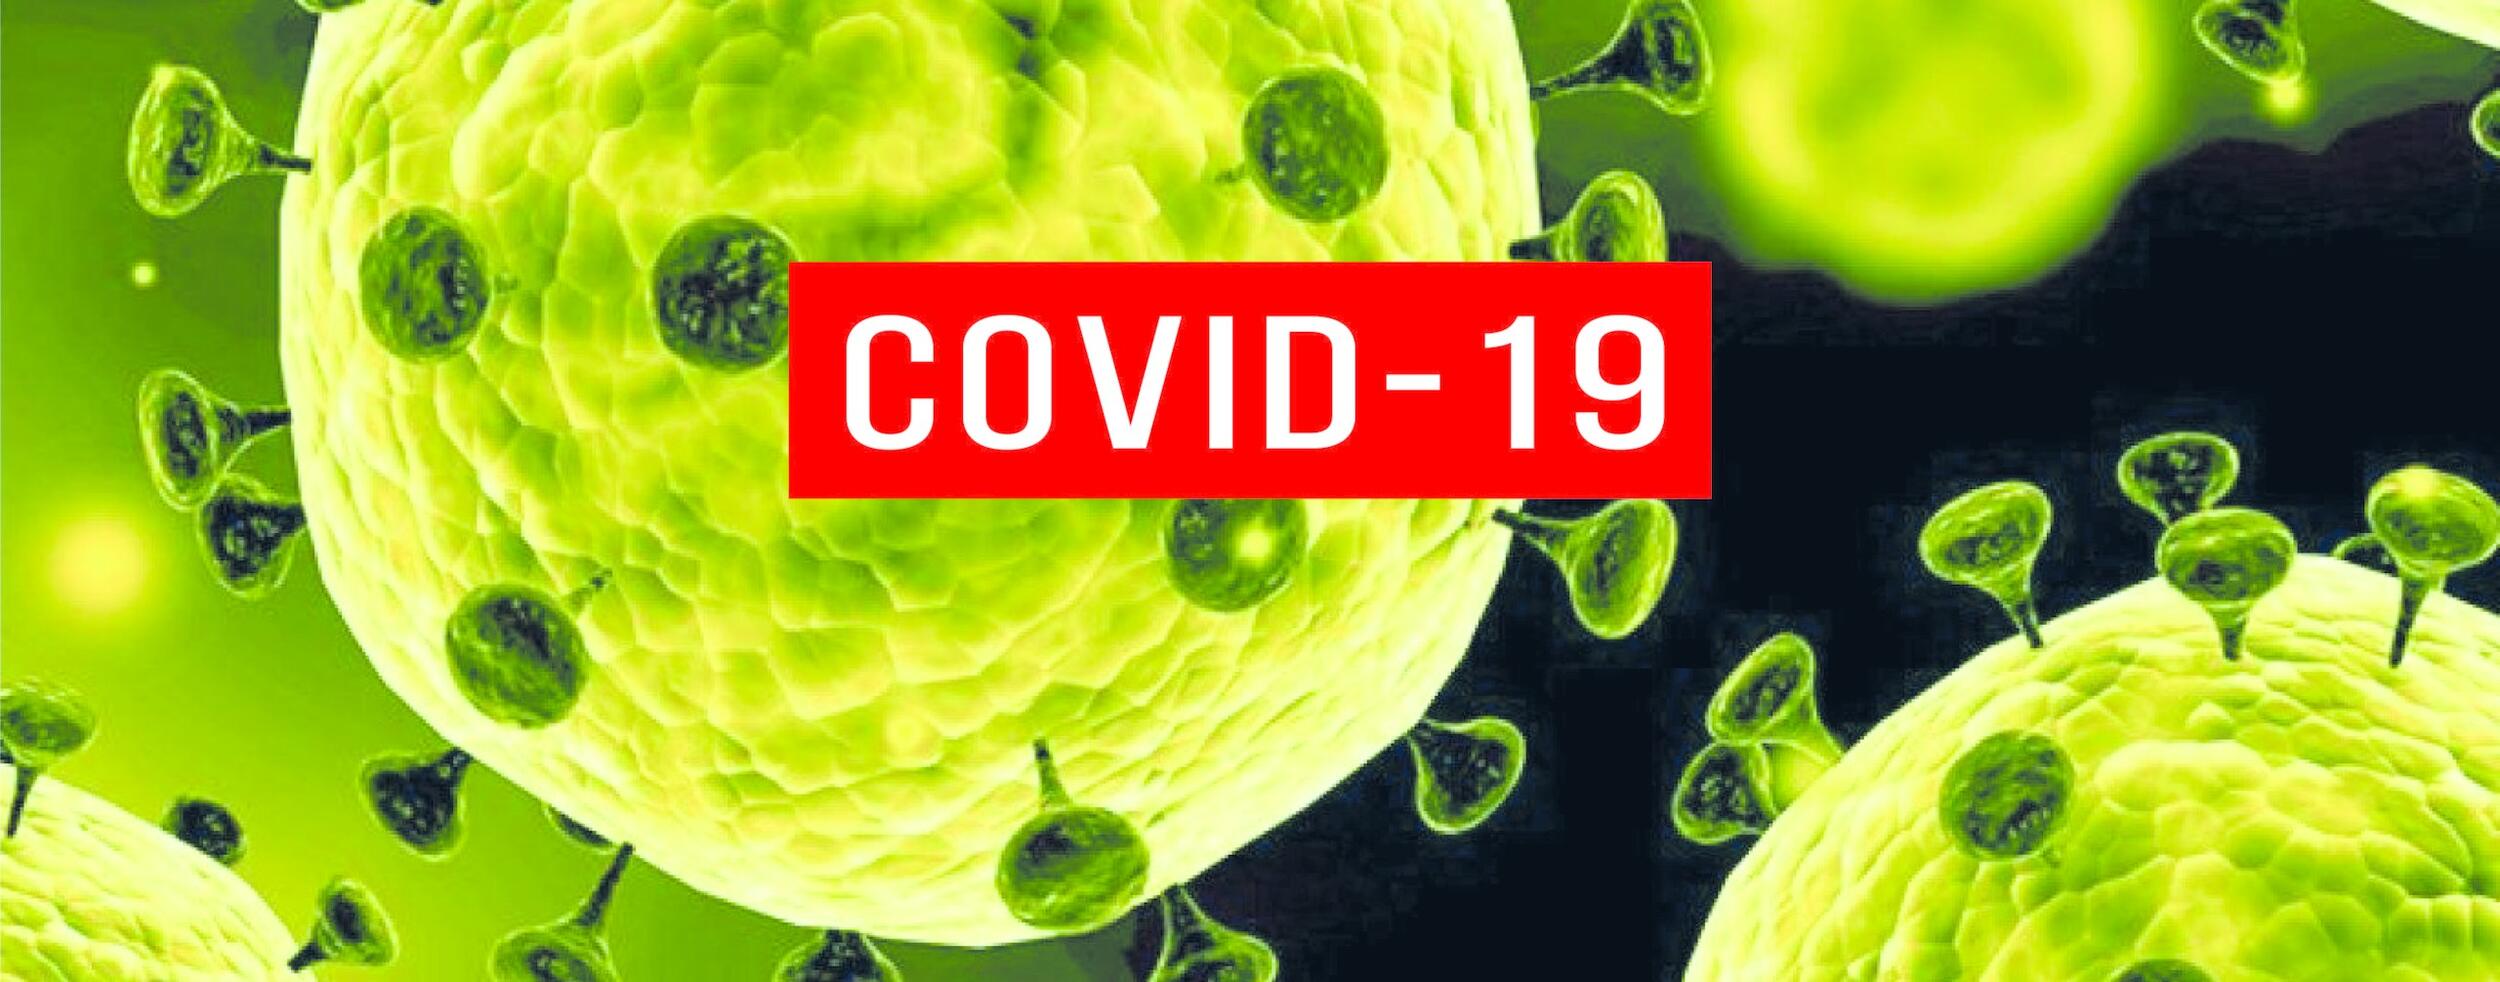 COVID-19: Município de Palmela reforça medidas de prevenção